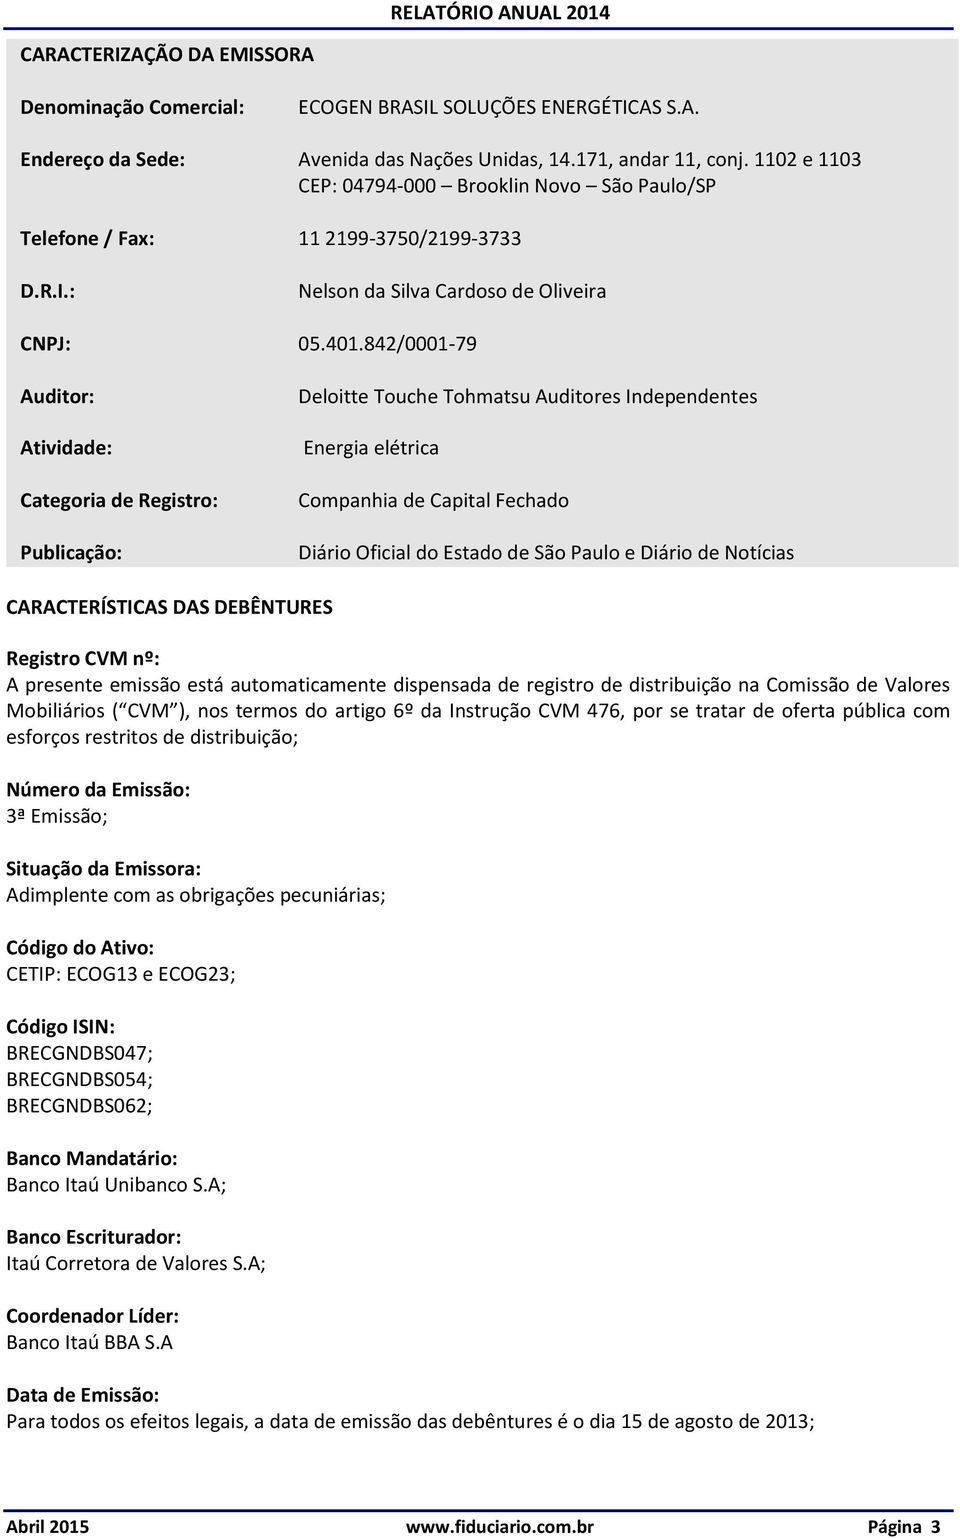 842/0001-79 Auditor: Atividade: Categoria de Registro: Publicação: Deloitte Touche Tohmatsu Auditores Independentes Energia elétrica Companhia de Capital Fechado Diário Oficial do Estado de São Paulo